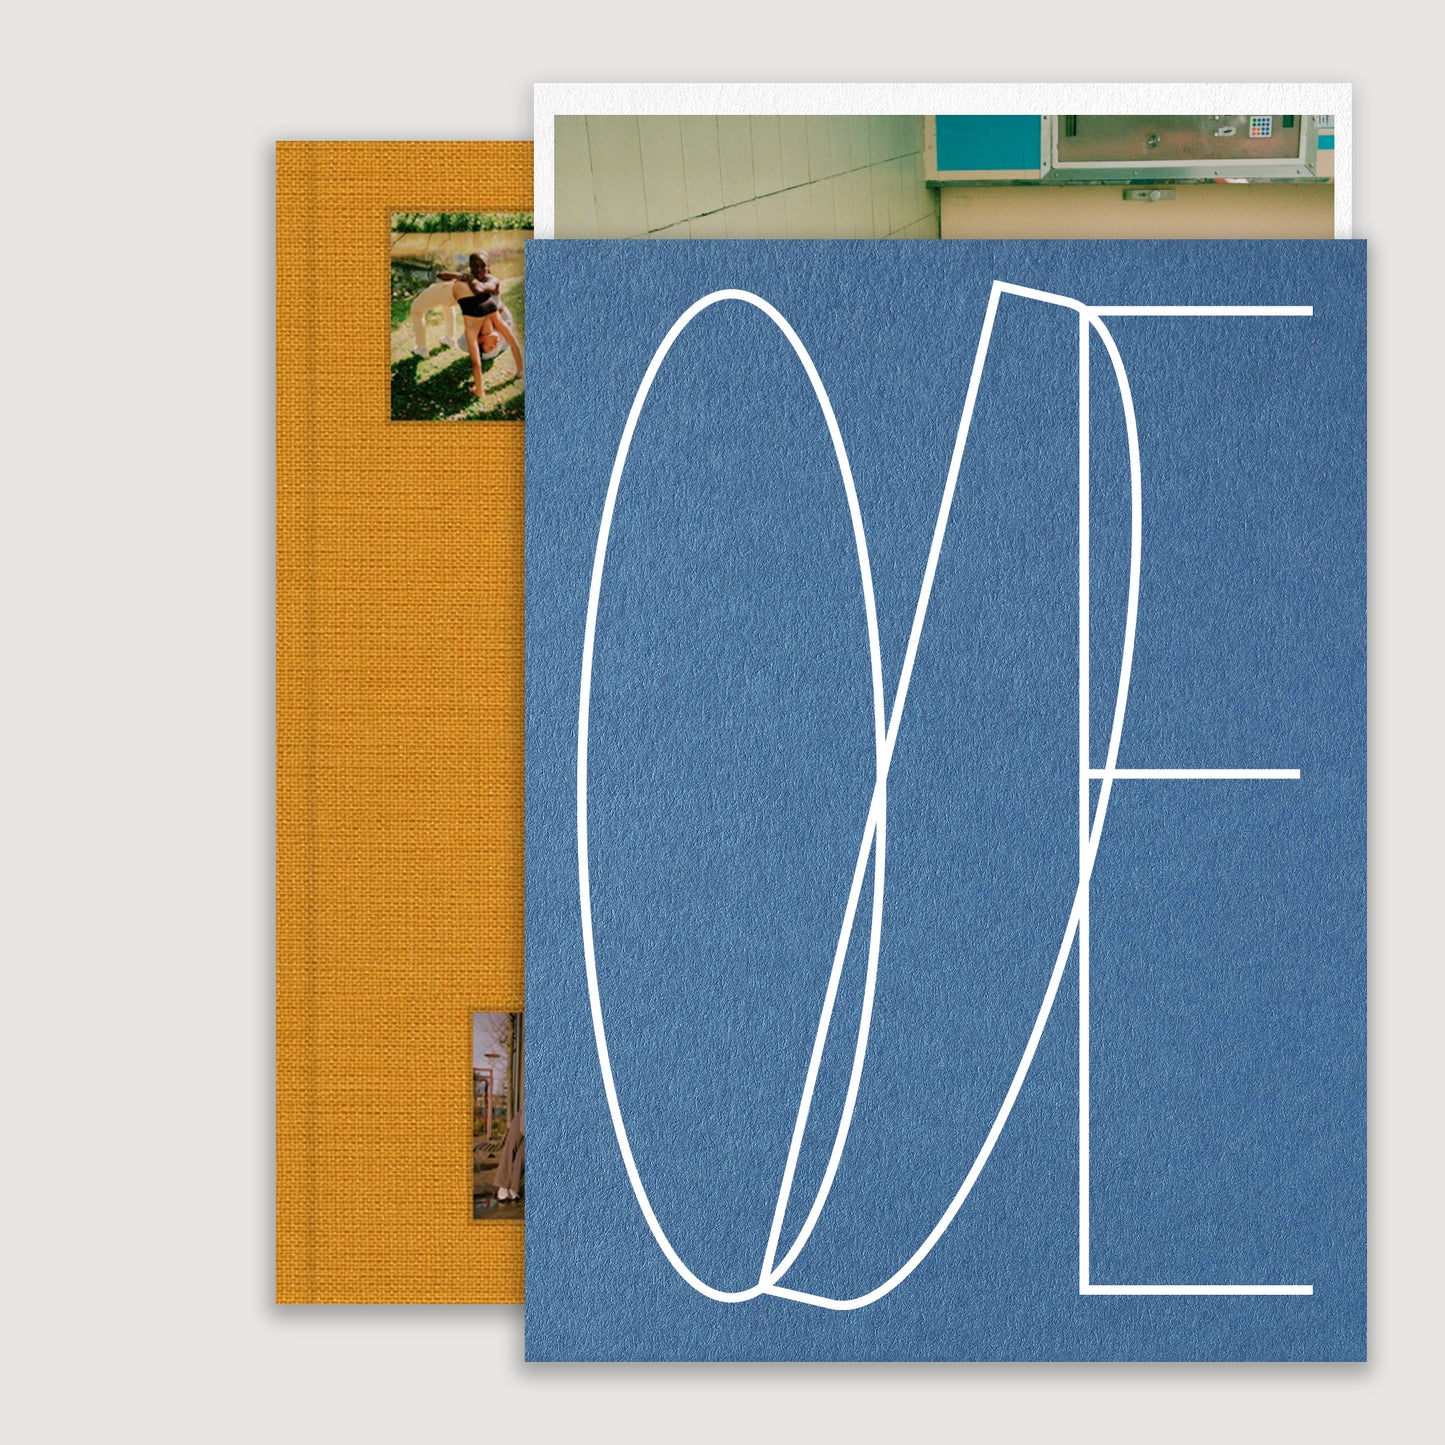 ODE, Melissa Schriek, Print Edition, Pre-Order